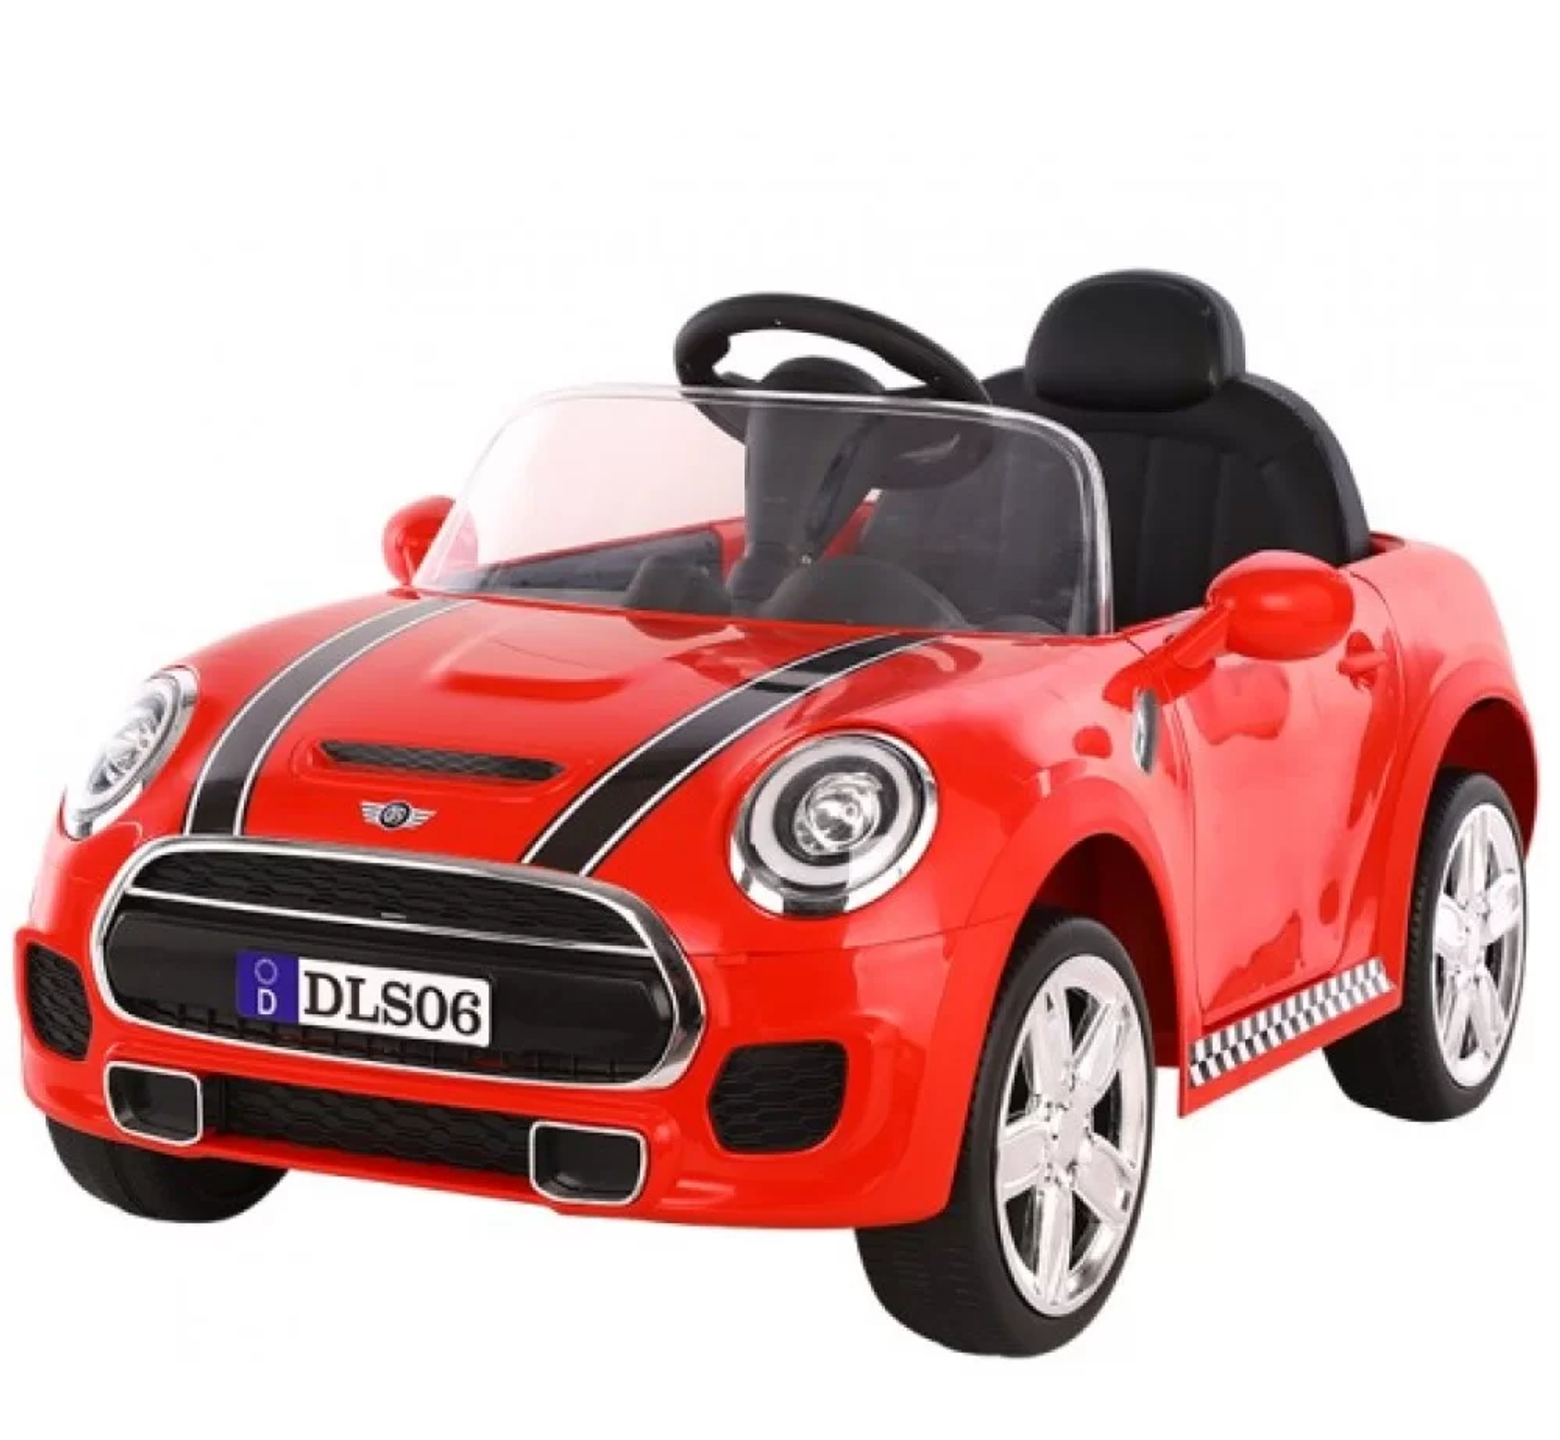 Ηλεκτροκίνητο αυτοκίνητο τύπου Mini Cooper 12V με δερμάτινο κάθισμα και ελαστικά τύπου αυτοκινήτου σε κόκκινο χρώμα